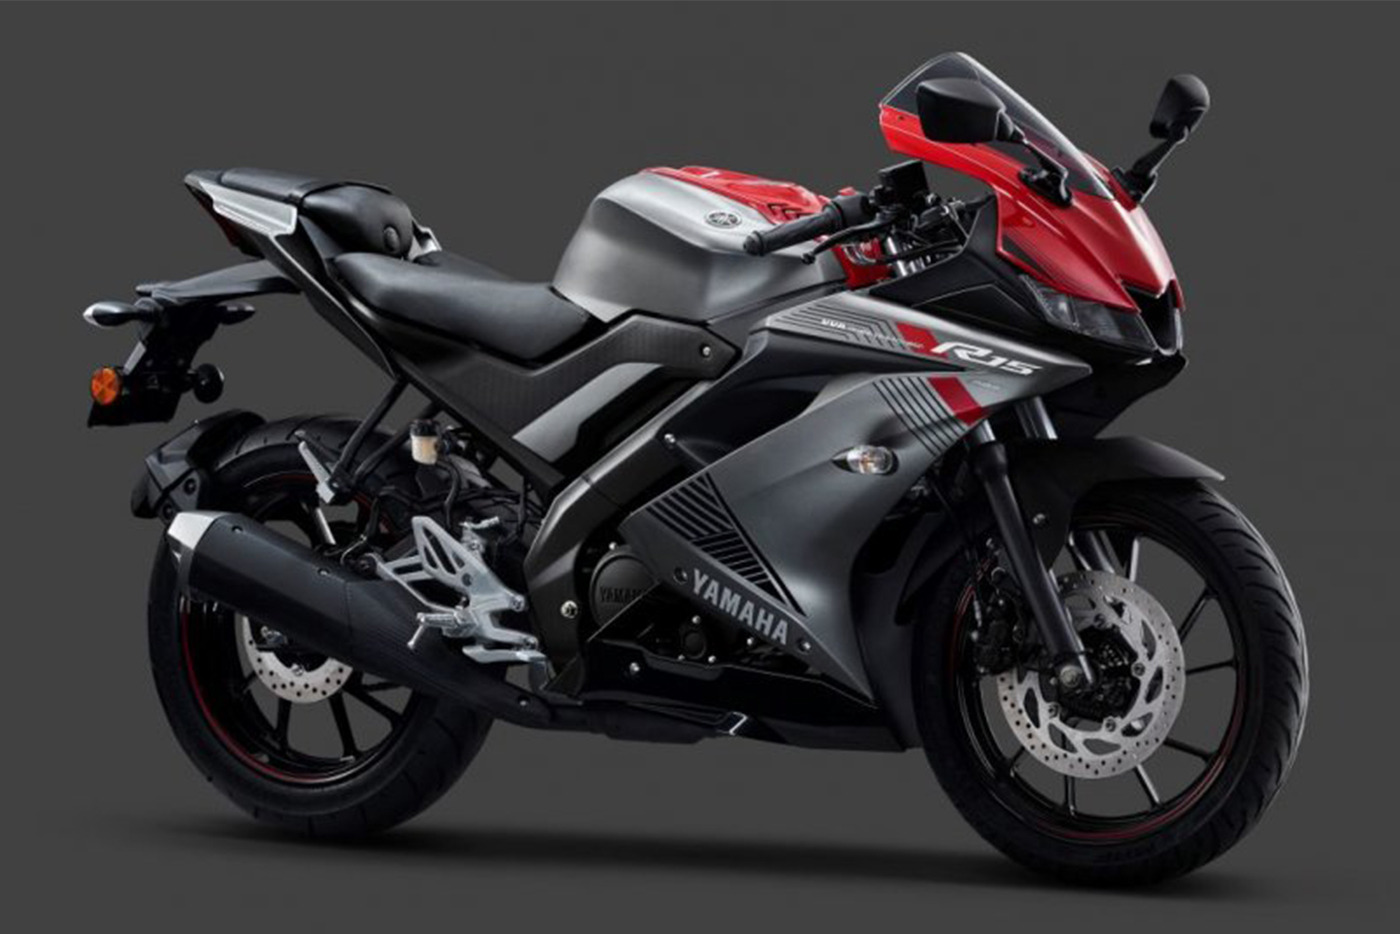 Nếu thích mô tô thể thao cỡ nhỏ, hãy chọn Honda CBR150R hoặc Yamaha R15